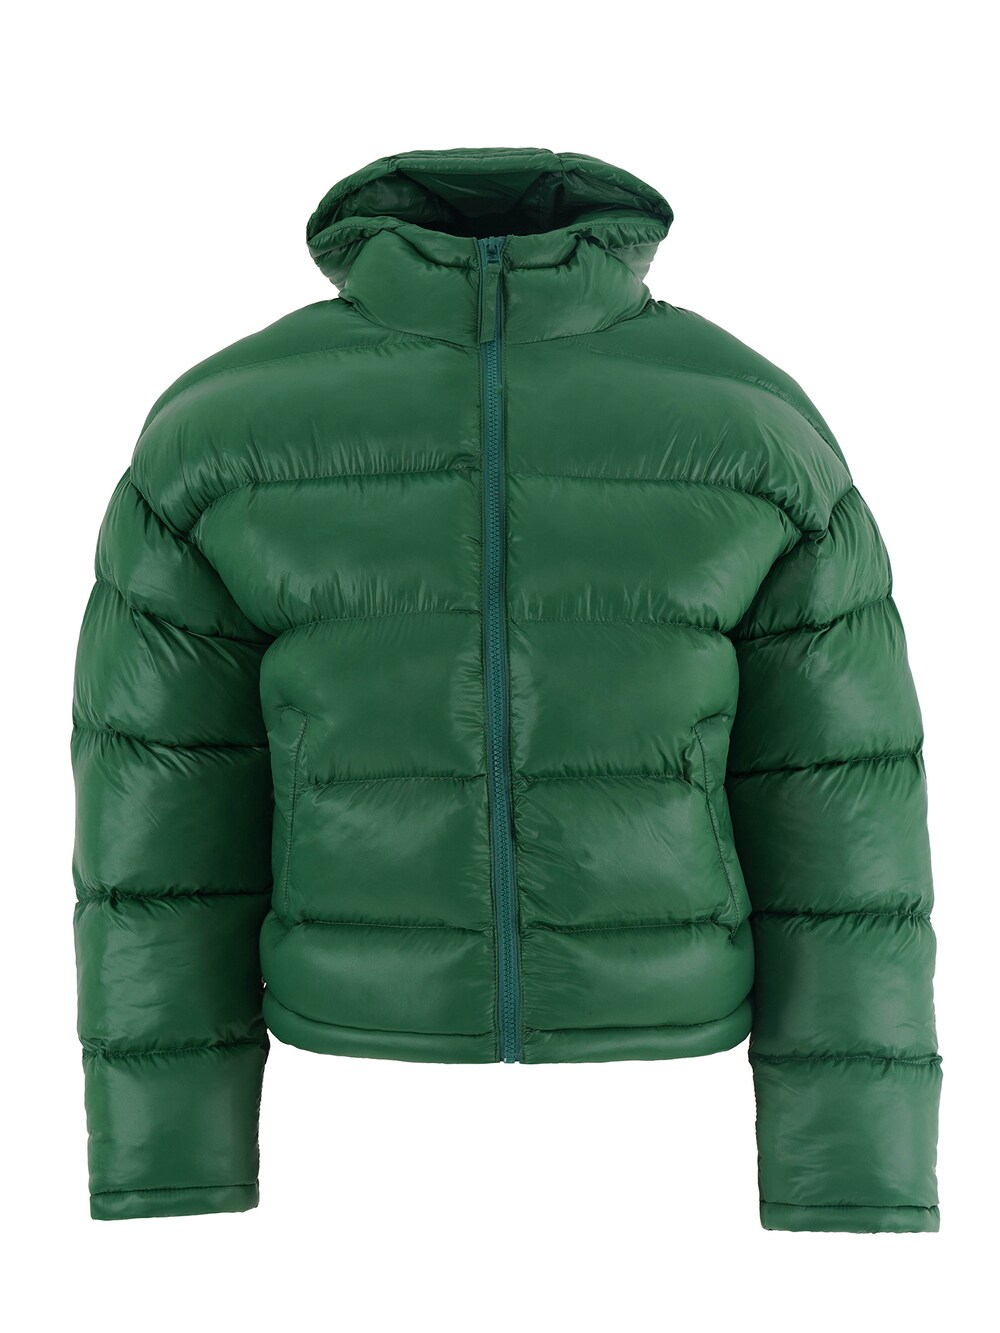 Межсезонная куртка Freshlions Bronx, зеленый